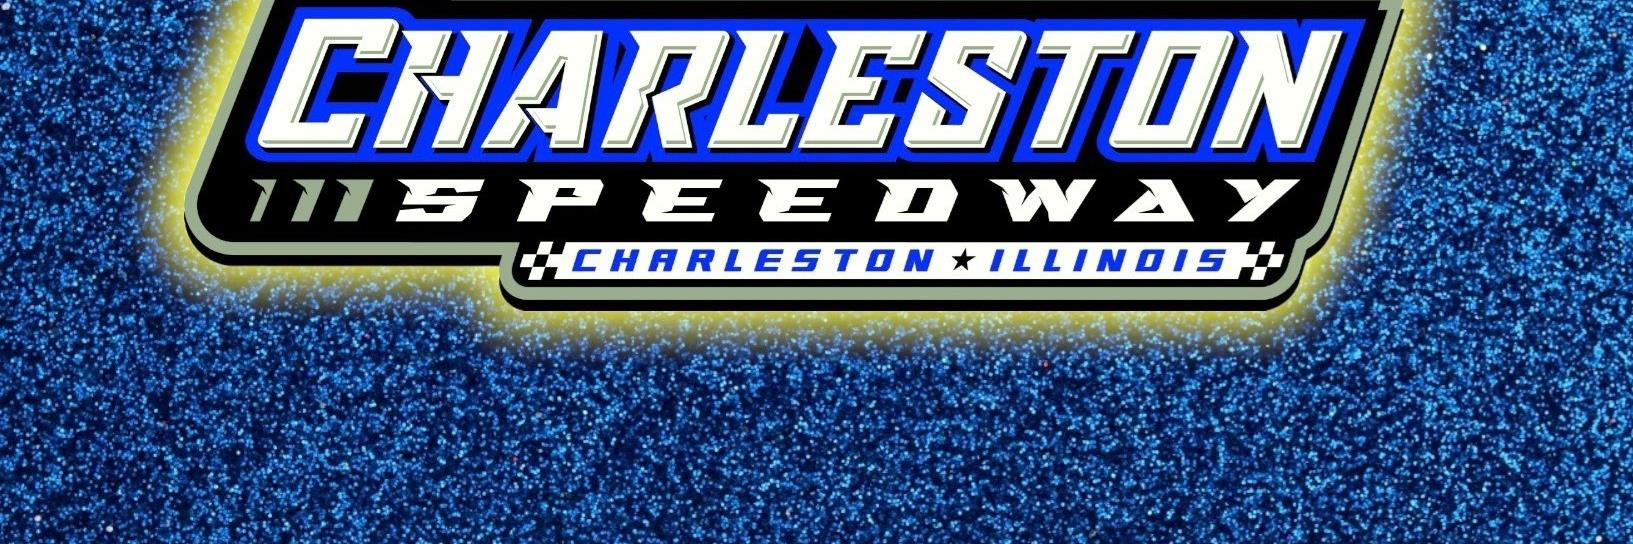 7/7/2018 - Charleston Speedway